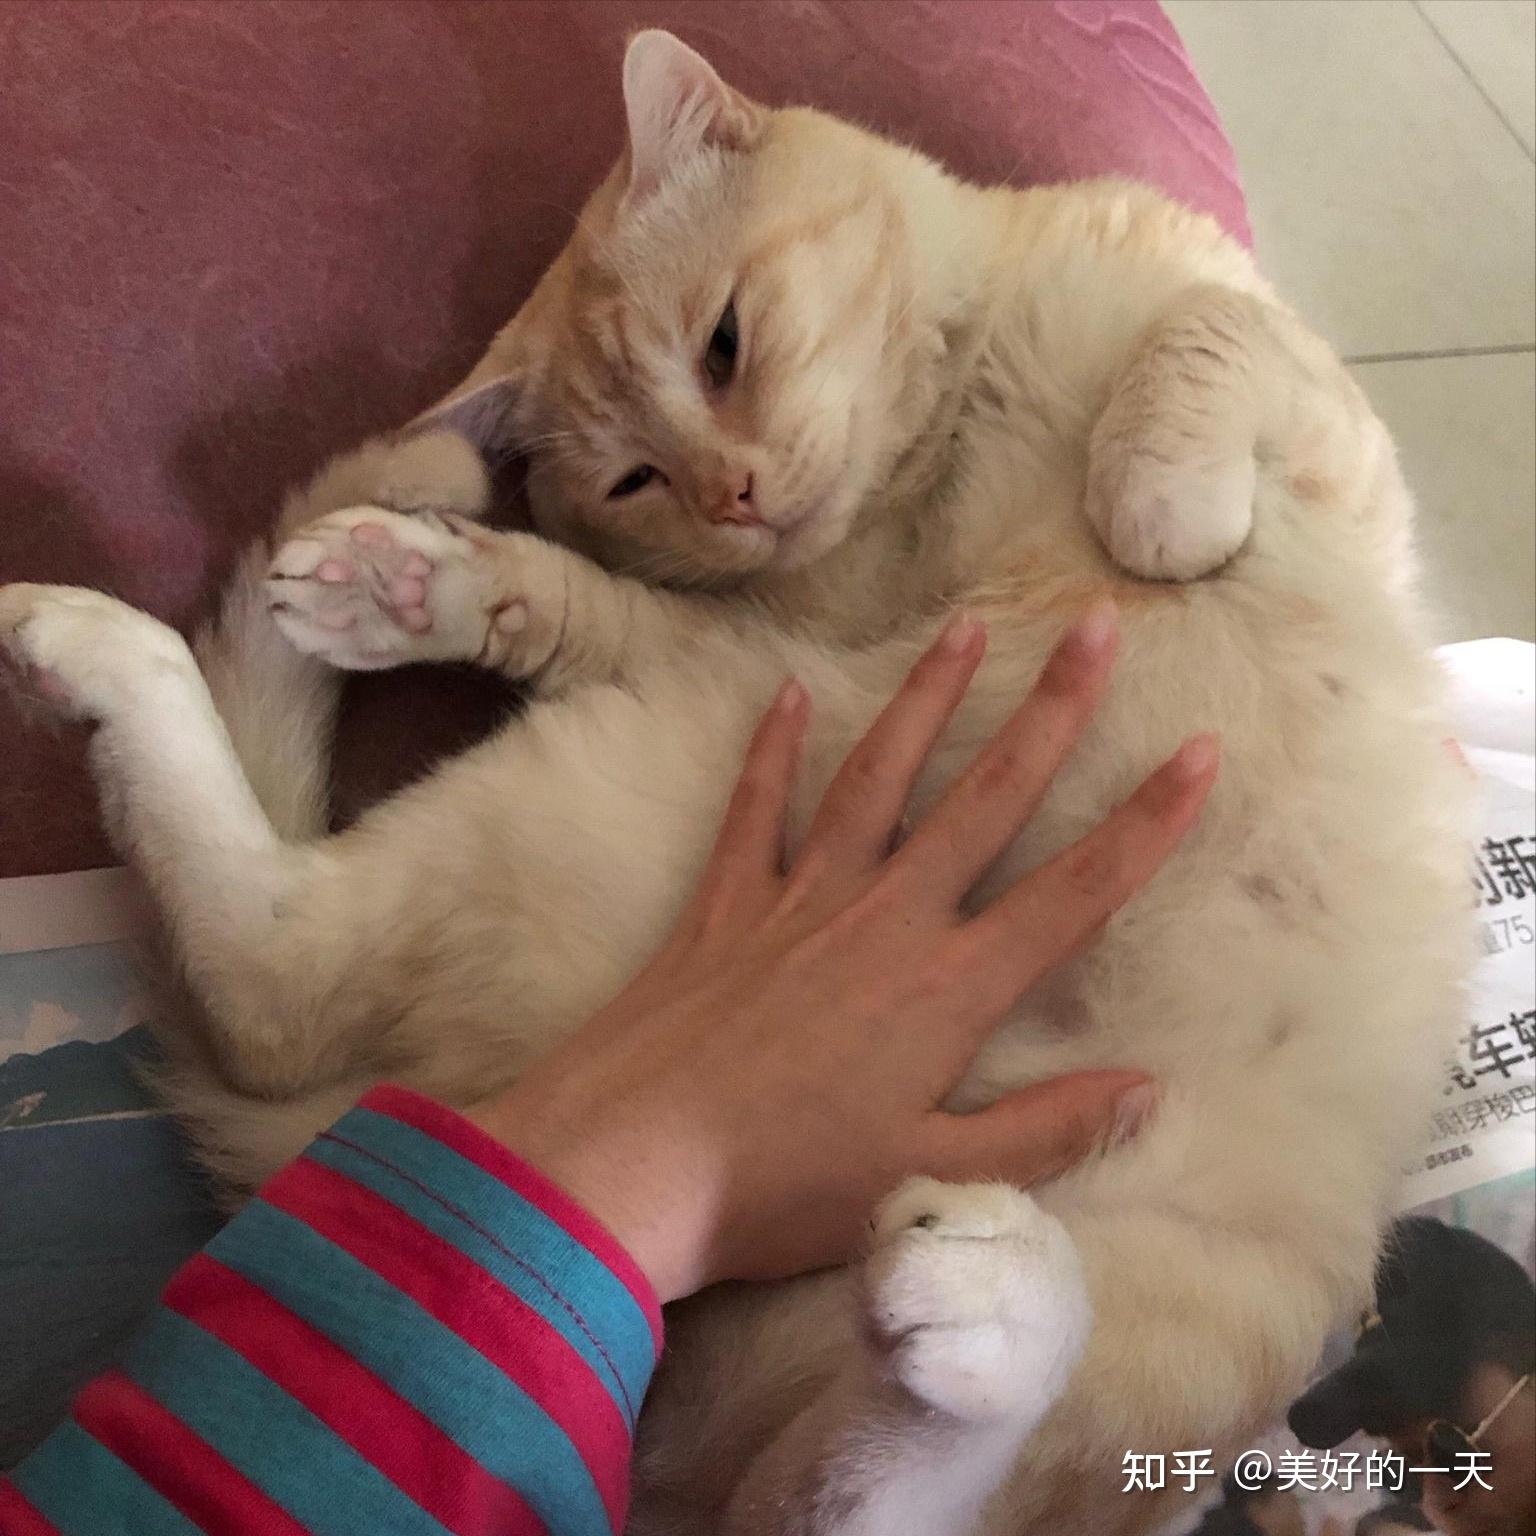 为什么猫在你摸肚子时，会突然咬你？ - 知乎